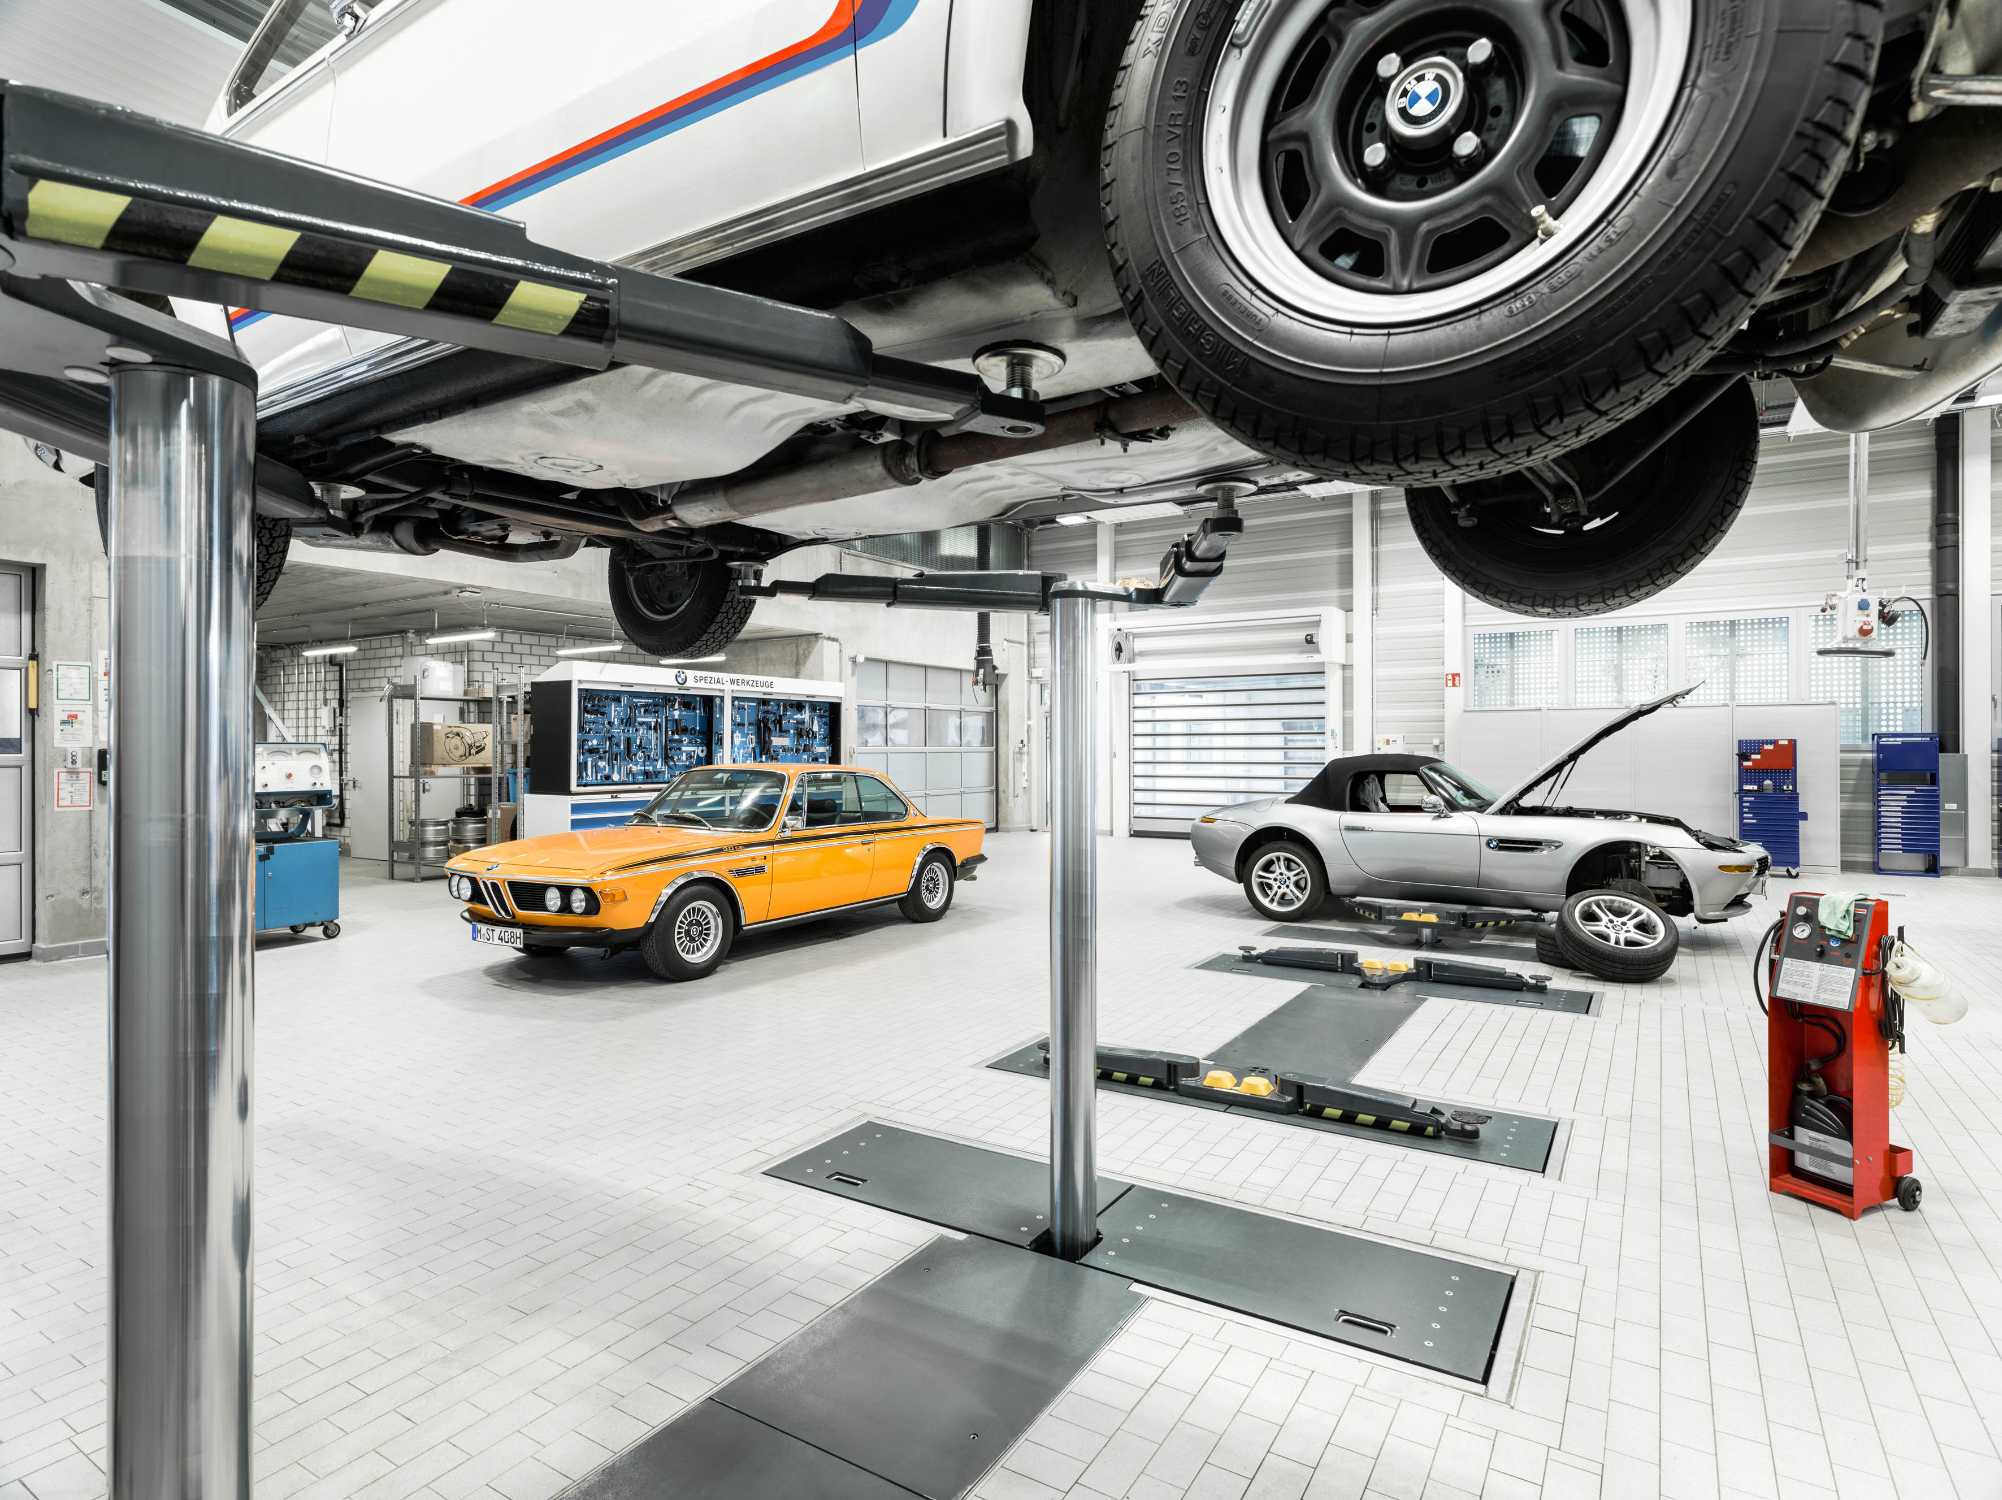 Werkstatt in der BMW Group Classic M 252 nchen 02 2018 